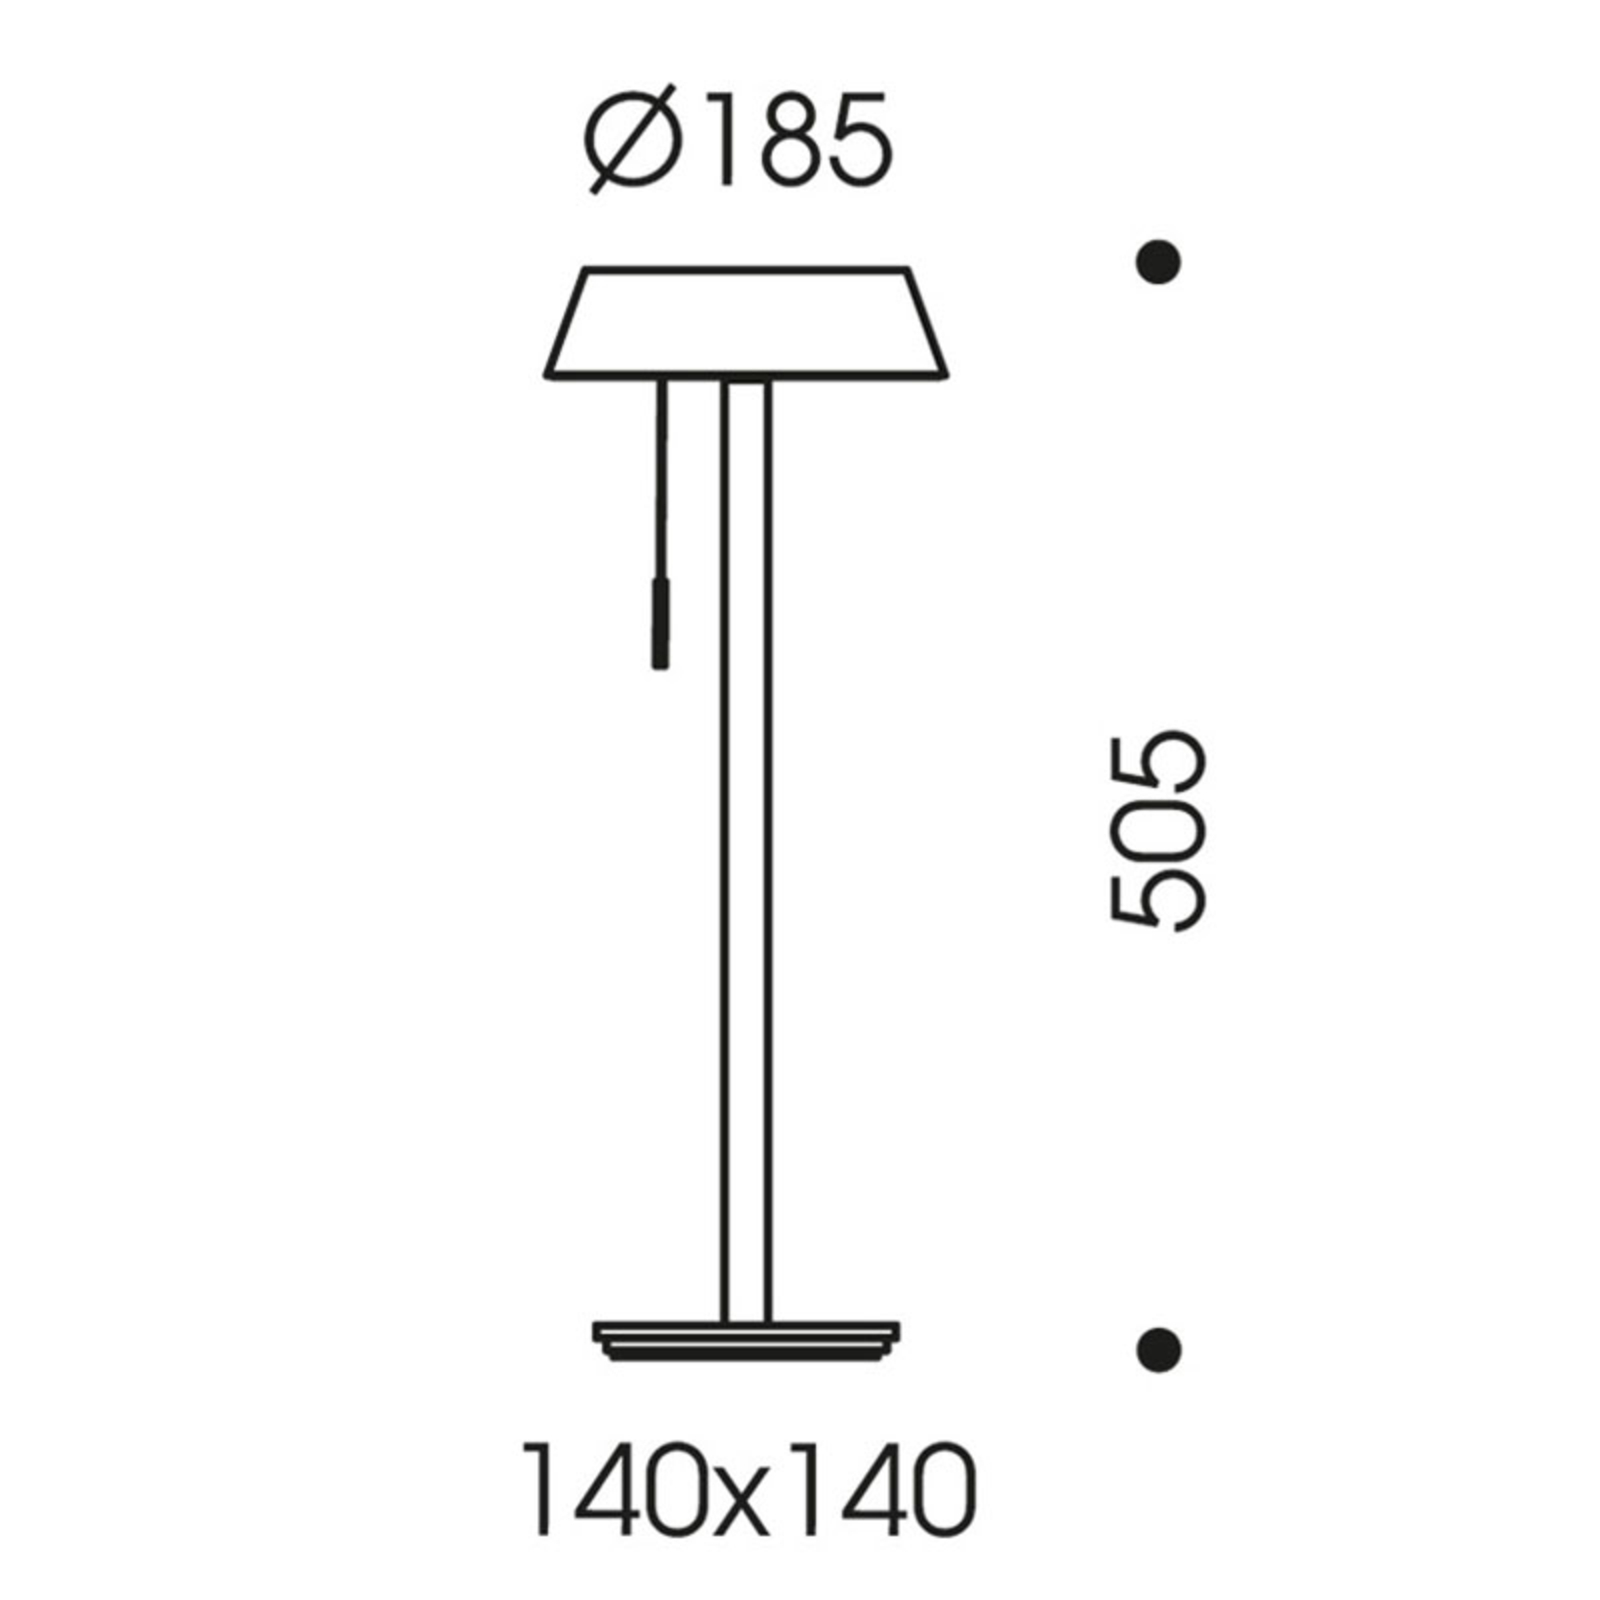 OLIGO Glance lámpara de mesa LED gris mate